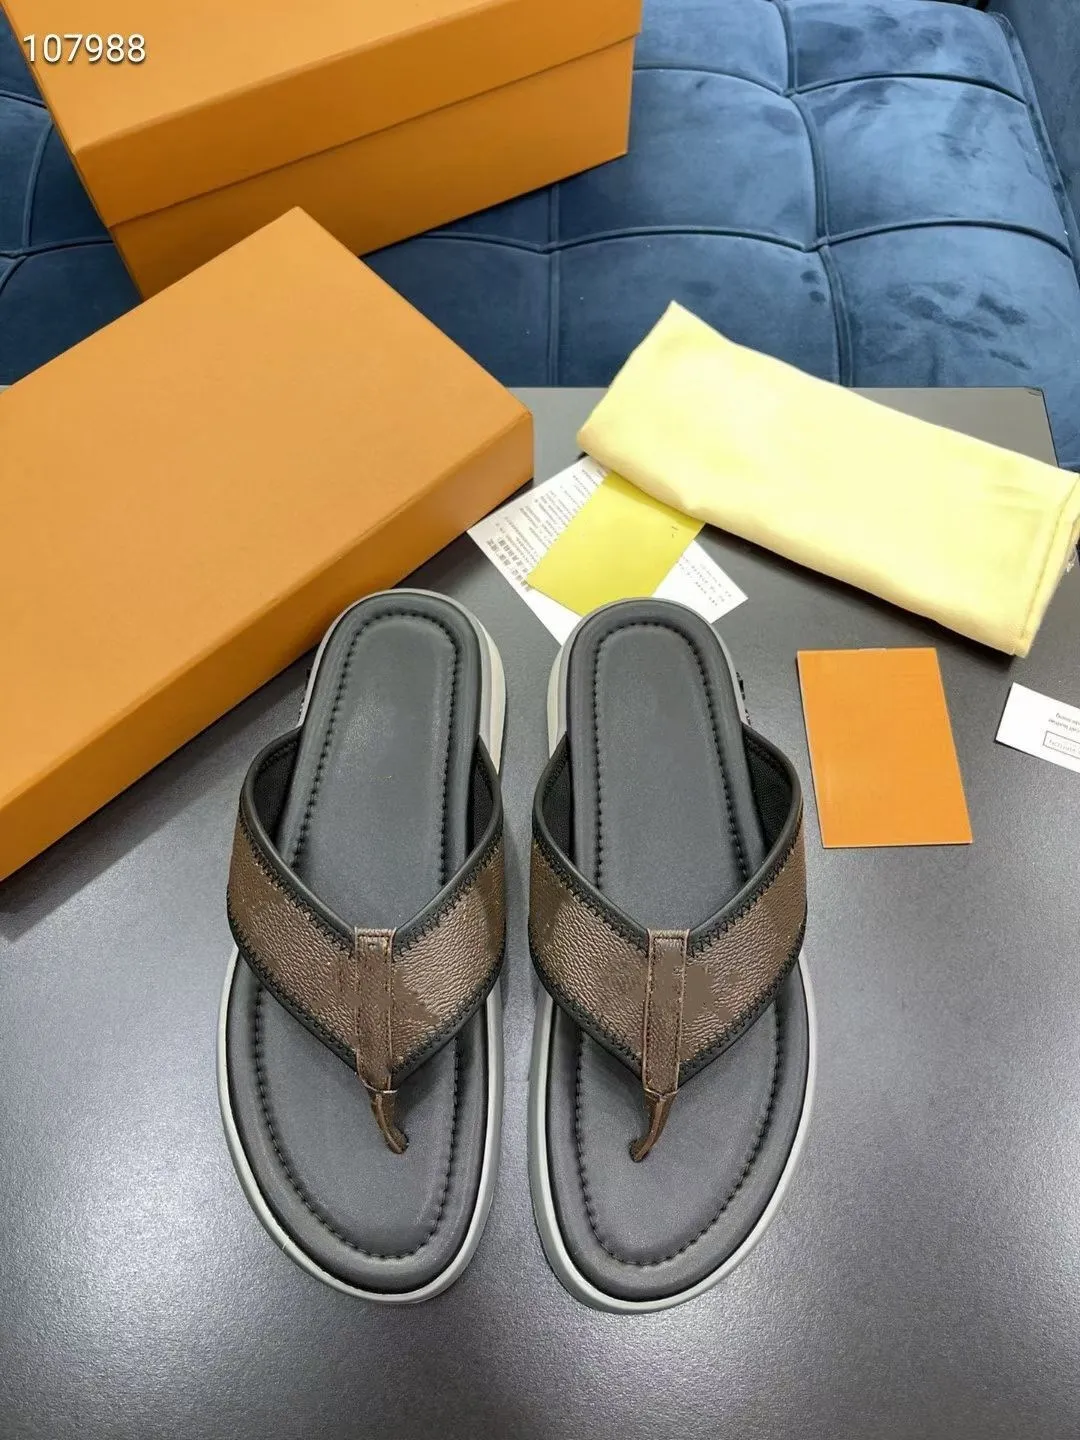 Men Summer Slippers slide BOM DIA FLAT MULE 1A3R5M Cool Effortlessly Stylish Slides 2 Straps with Adjusted Gold Buckles sandals logo box large size 38-44